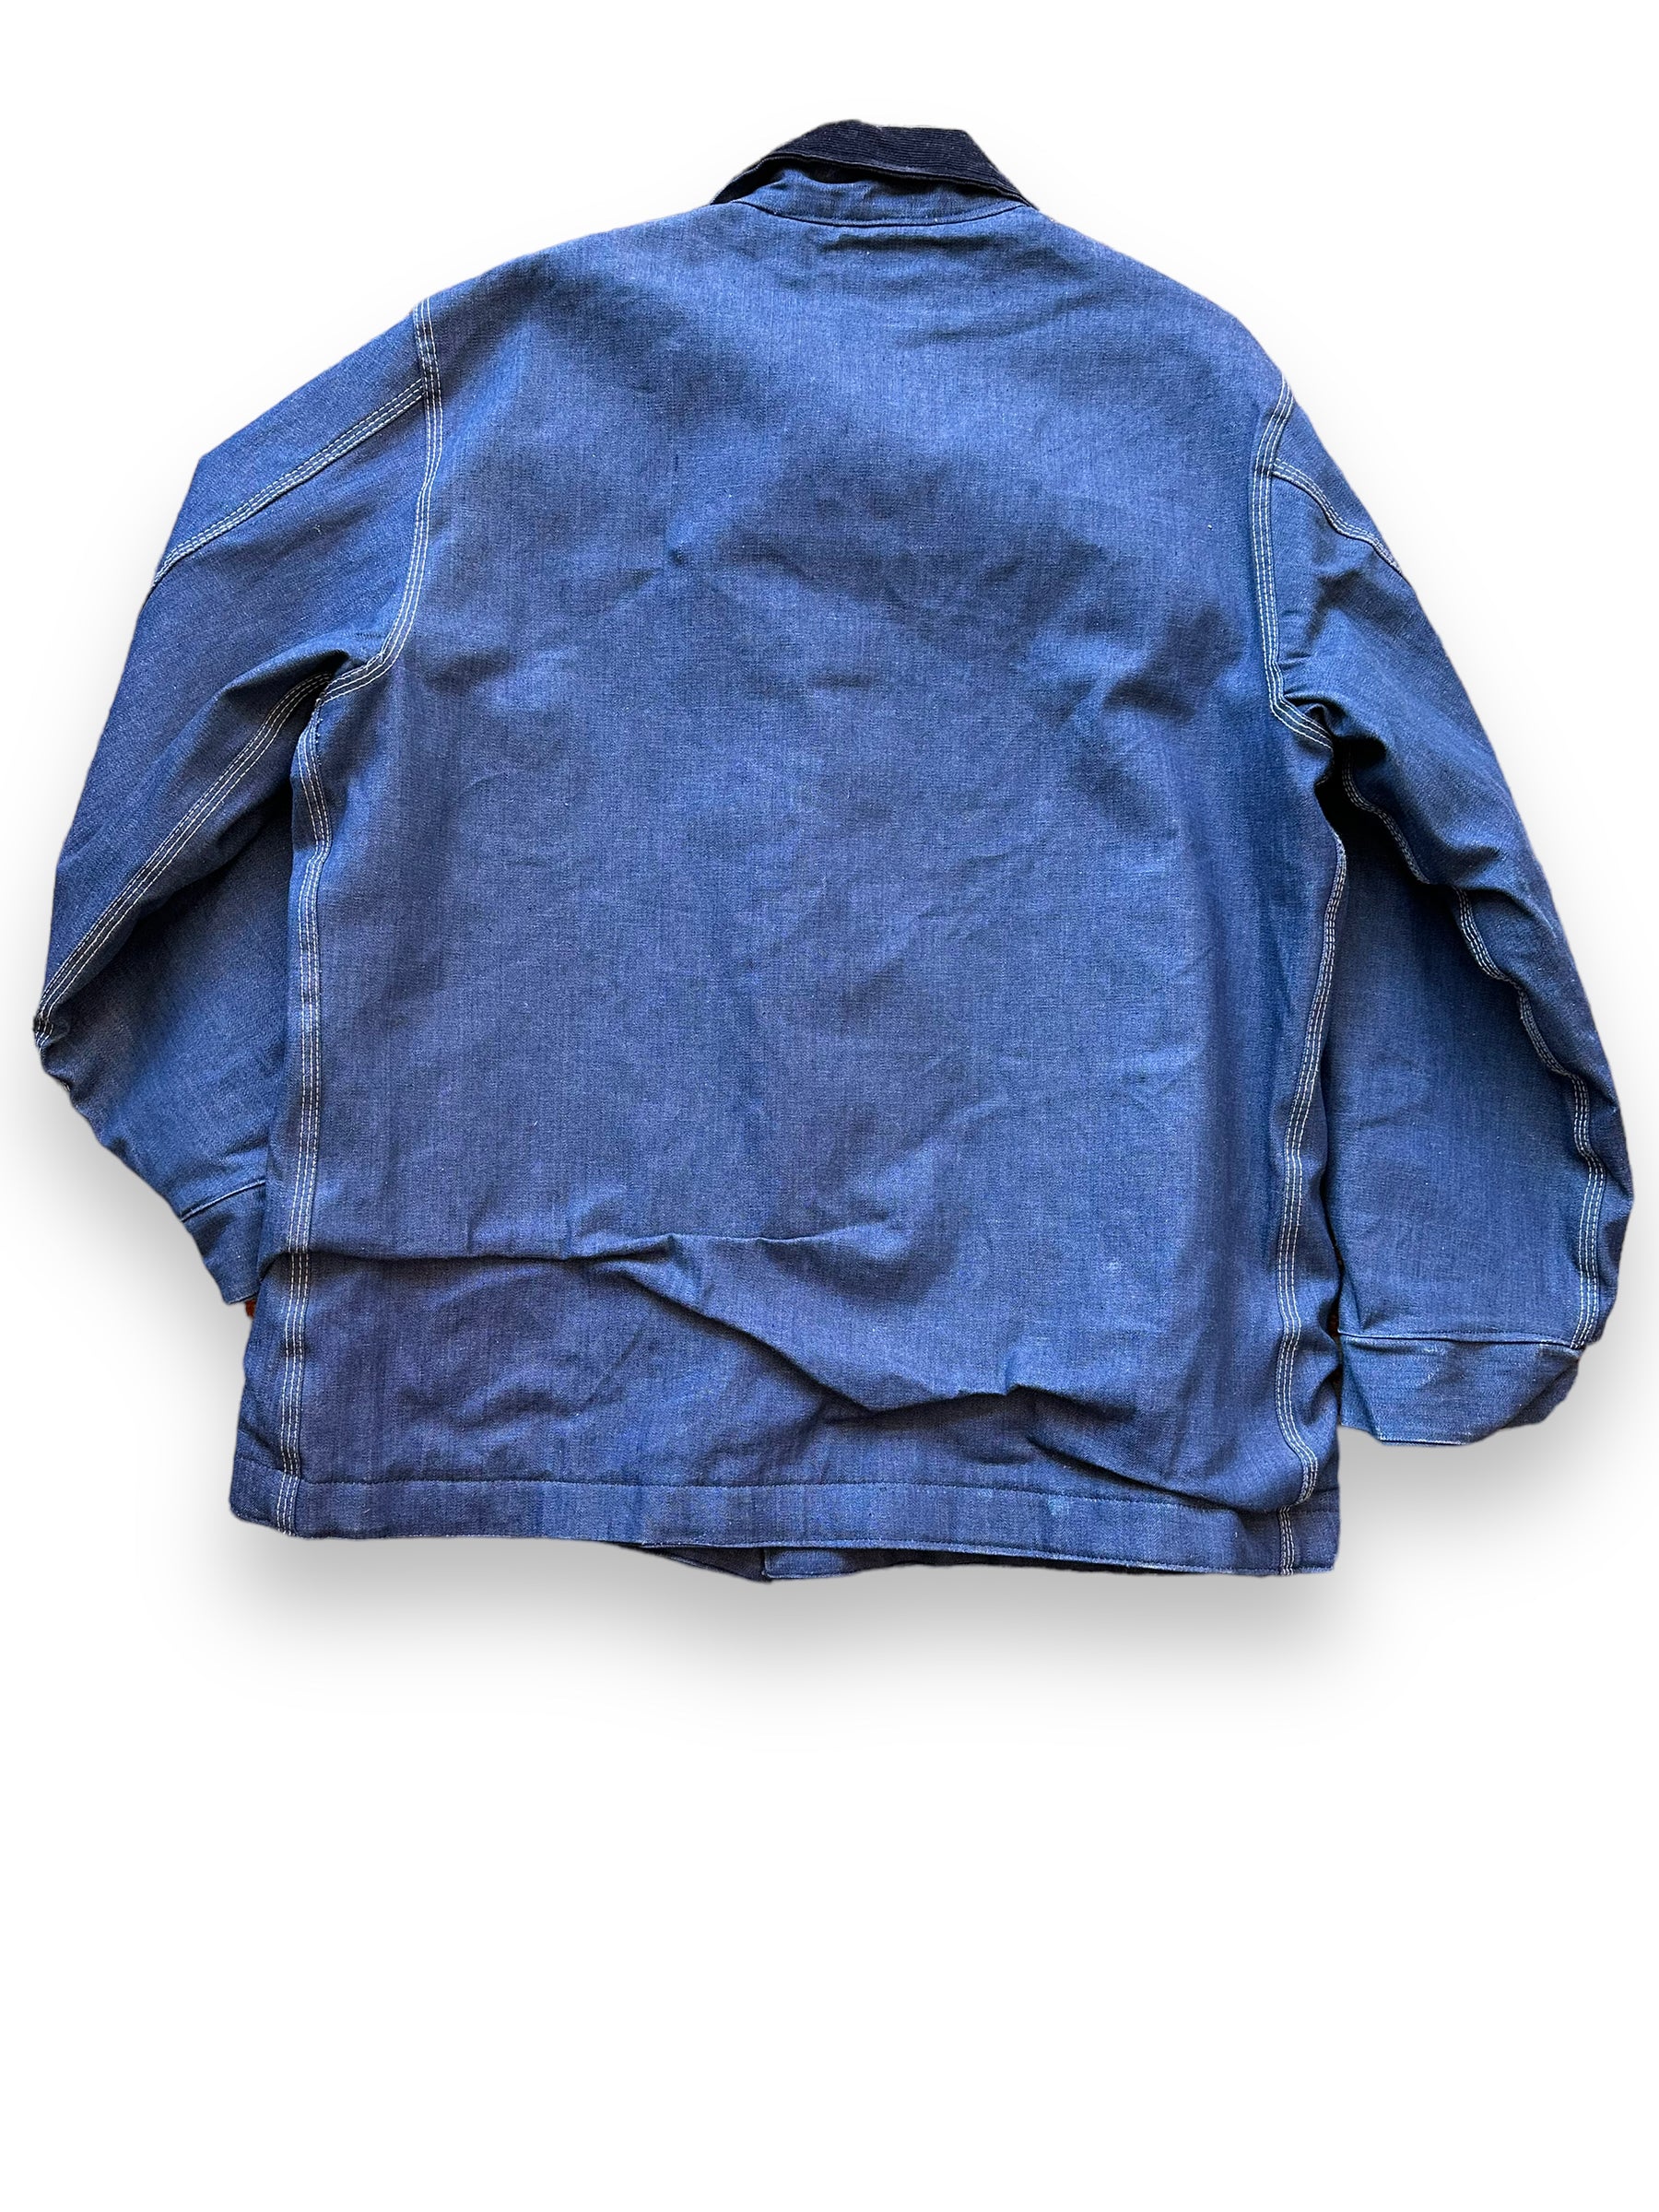 Rear View of Vintage Sears Blanket Lined Denim Chore Coat SZ XL | Vintage Denim Chore Coat | Barn Owl Vintage Seattle